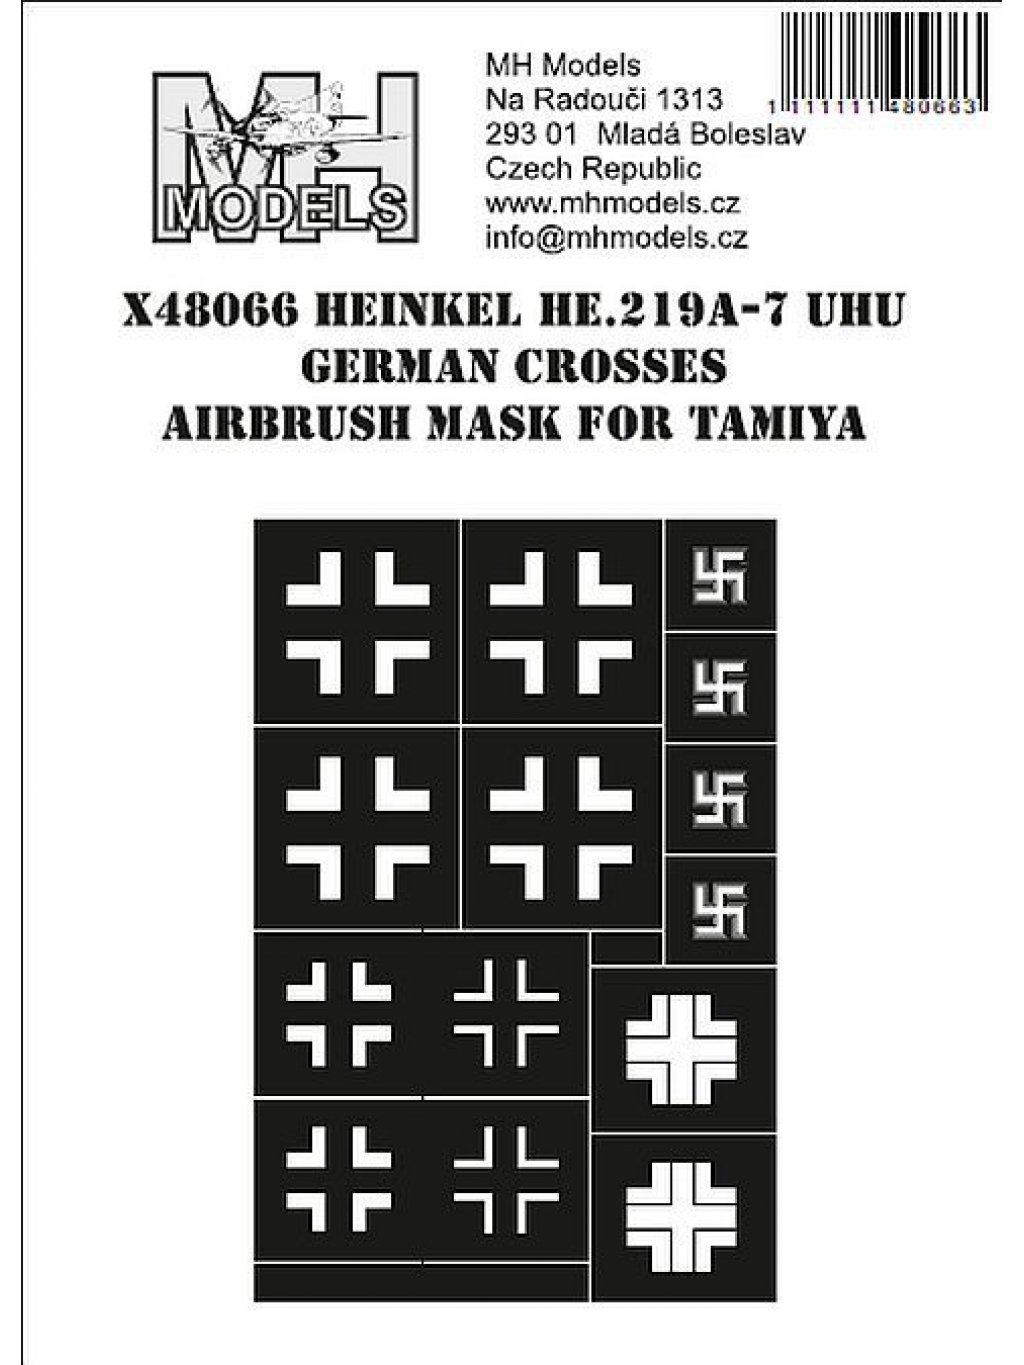 Heinkel He.219A-7 Uhu German Crosses airbrush mask for Tamiya